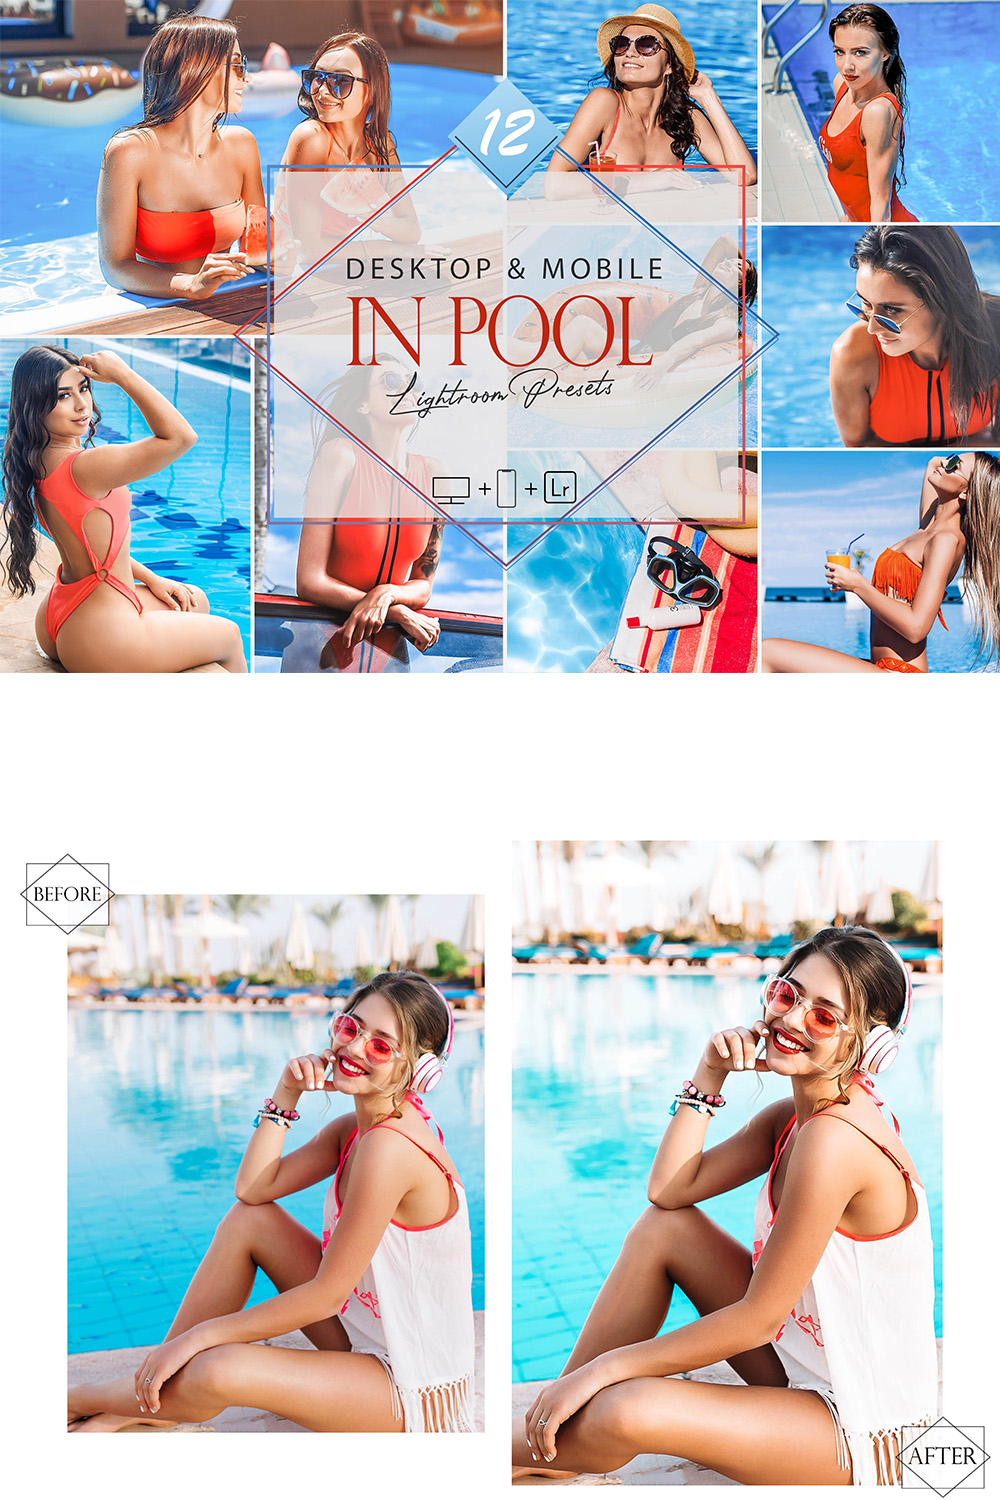 12 In Pool Lightroom Presets, Bright Preset, Blue Desktop LR Filter, DNG Portrait Lifestyle, Top Theme, Summer Blogger Instagram pinterest preview image.